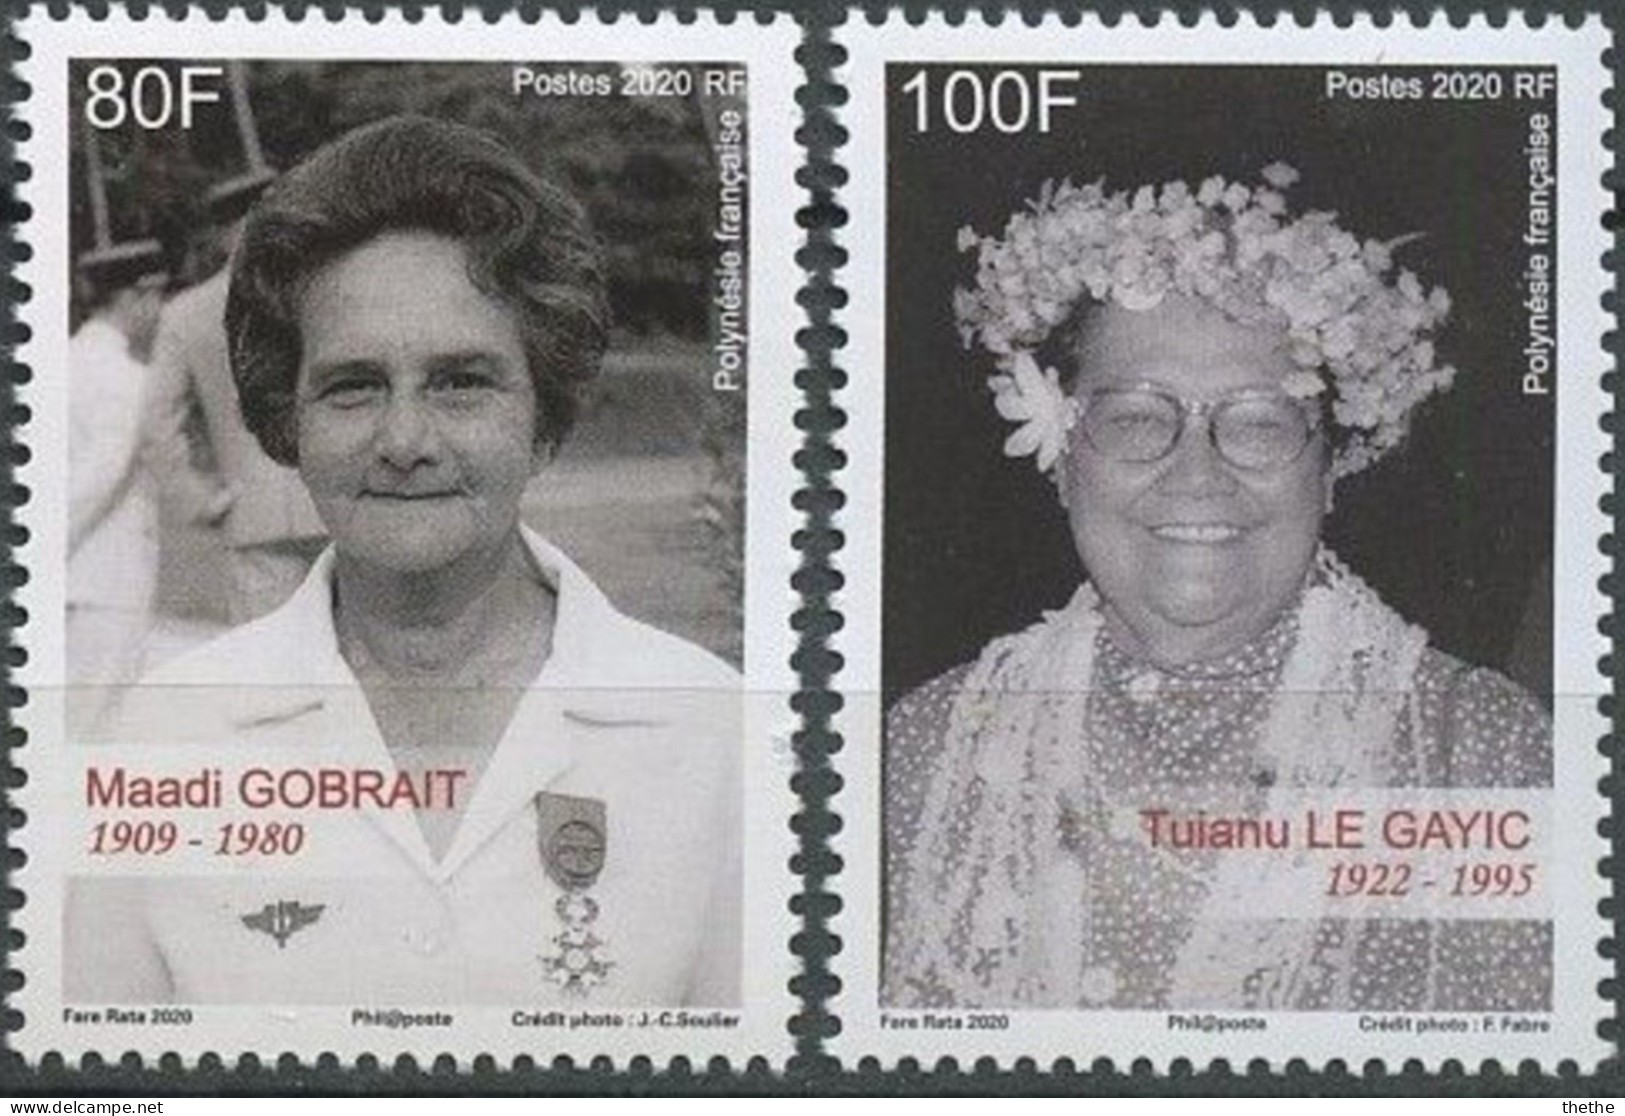 POLYNESIE - Maadi Gobrait (1909-1980), Infirmière Et Militante Politique - Tuianu Le Gayic(1922-1995), Militante Pour Le - Nuovi